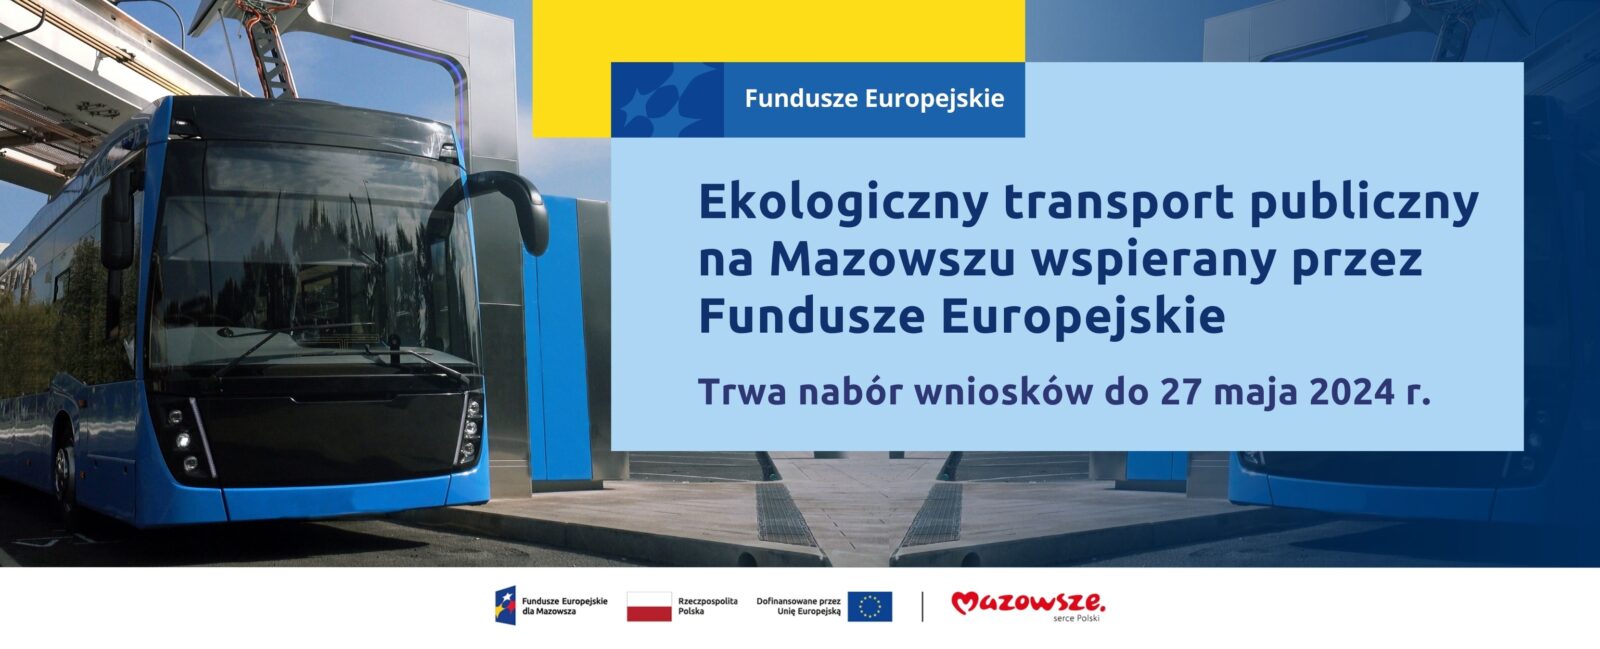 grafika przedstawia napis: Ekologiczny transport publiczny na Mazowszu wspierany przez Fundusze Europejskie Trwa nabór wniosków do 27 maja 2024 r. Z lewej strony widać nowoczesny autobus miejski.